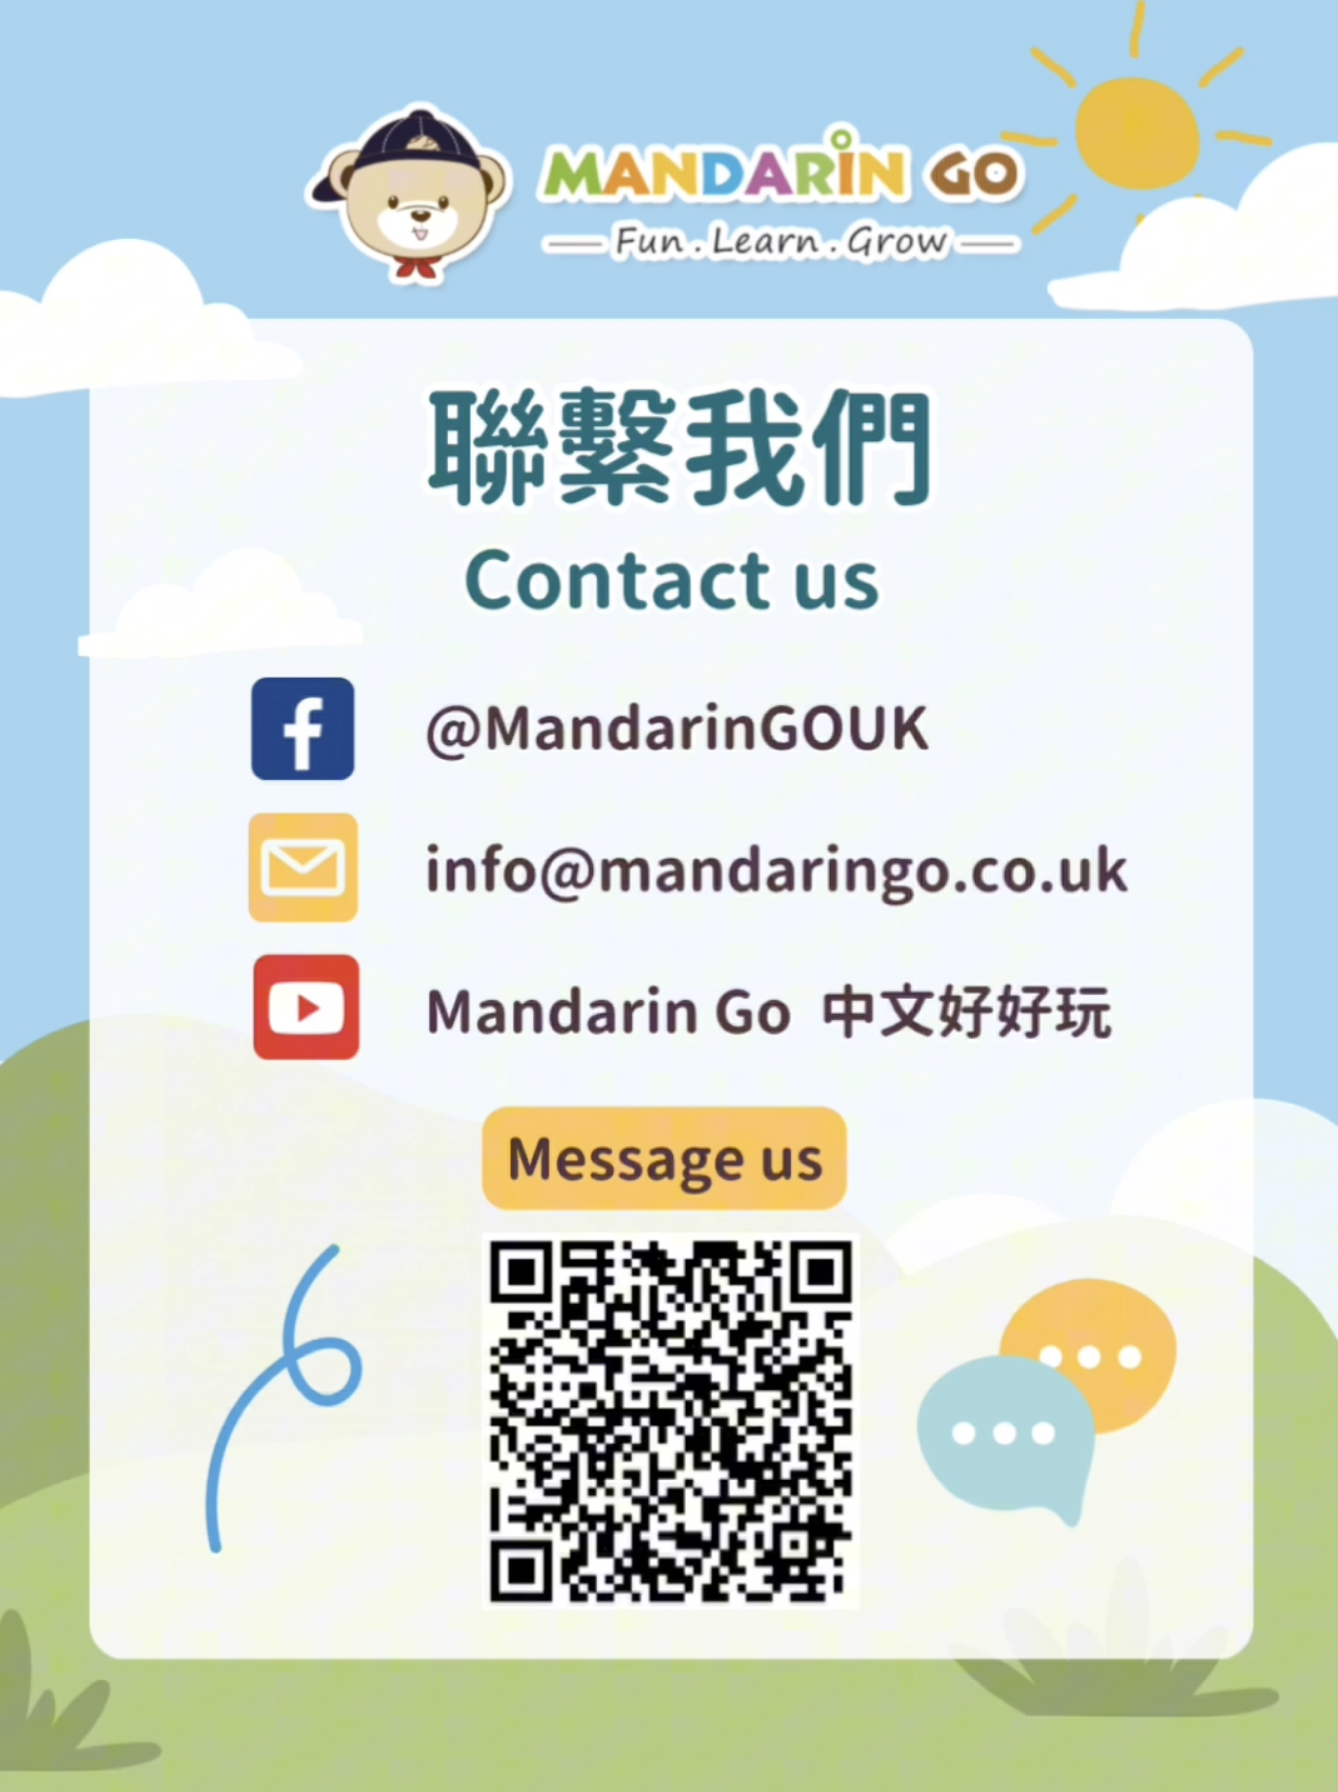 Mandarin Go 更多活動與資訊歡迎聯繫！